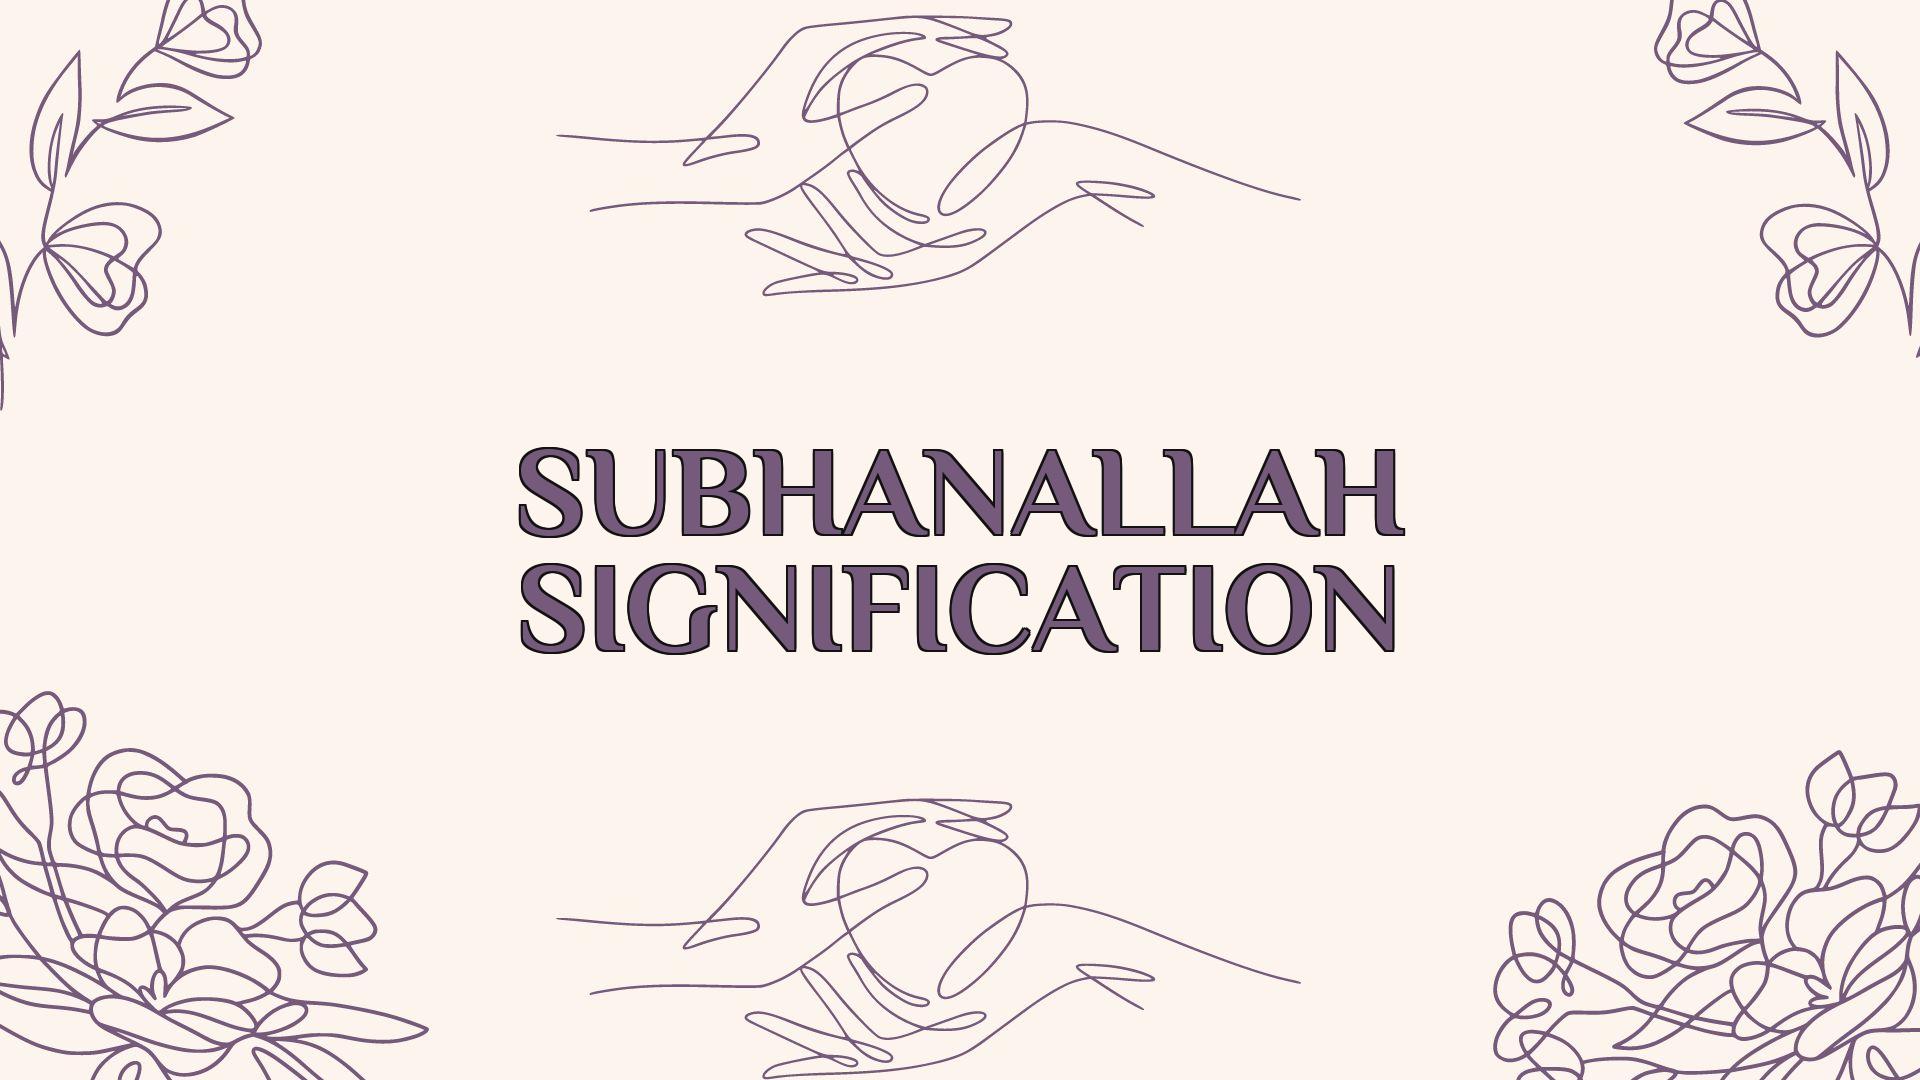 subhanallah signification